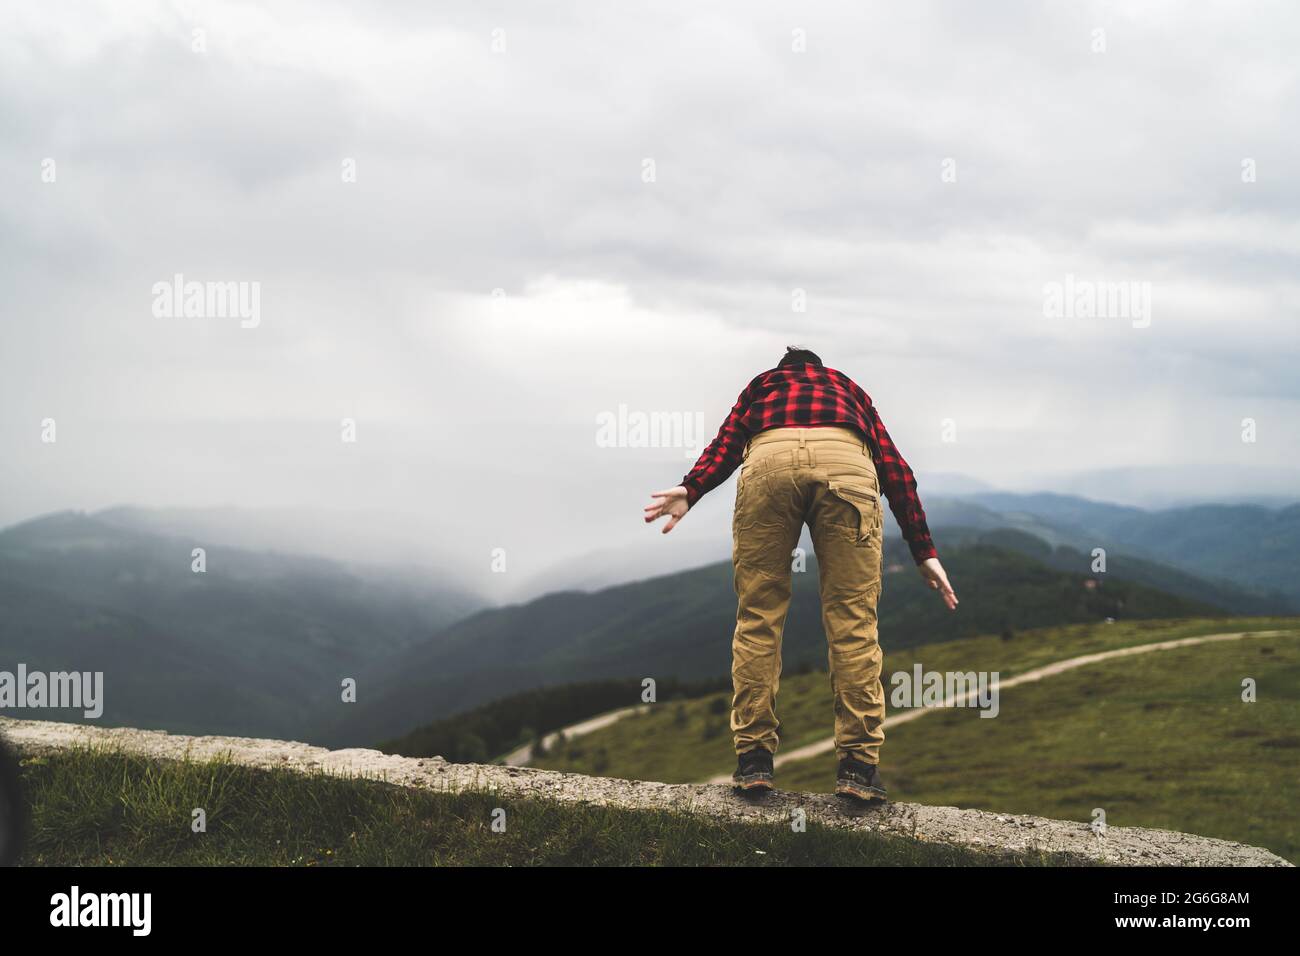 Adventure man in mountain peak Stock Photo